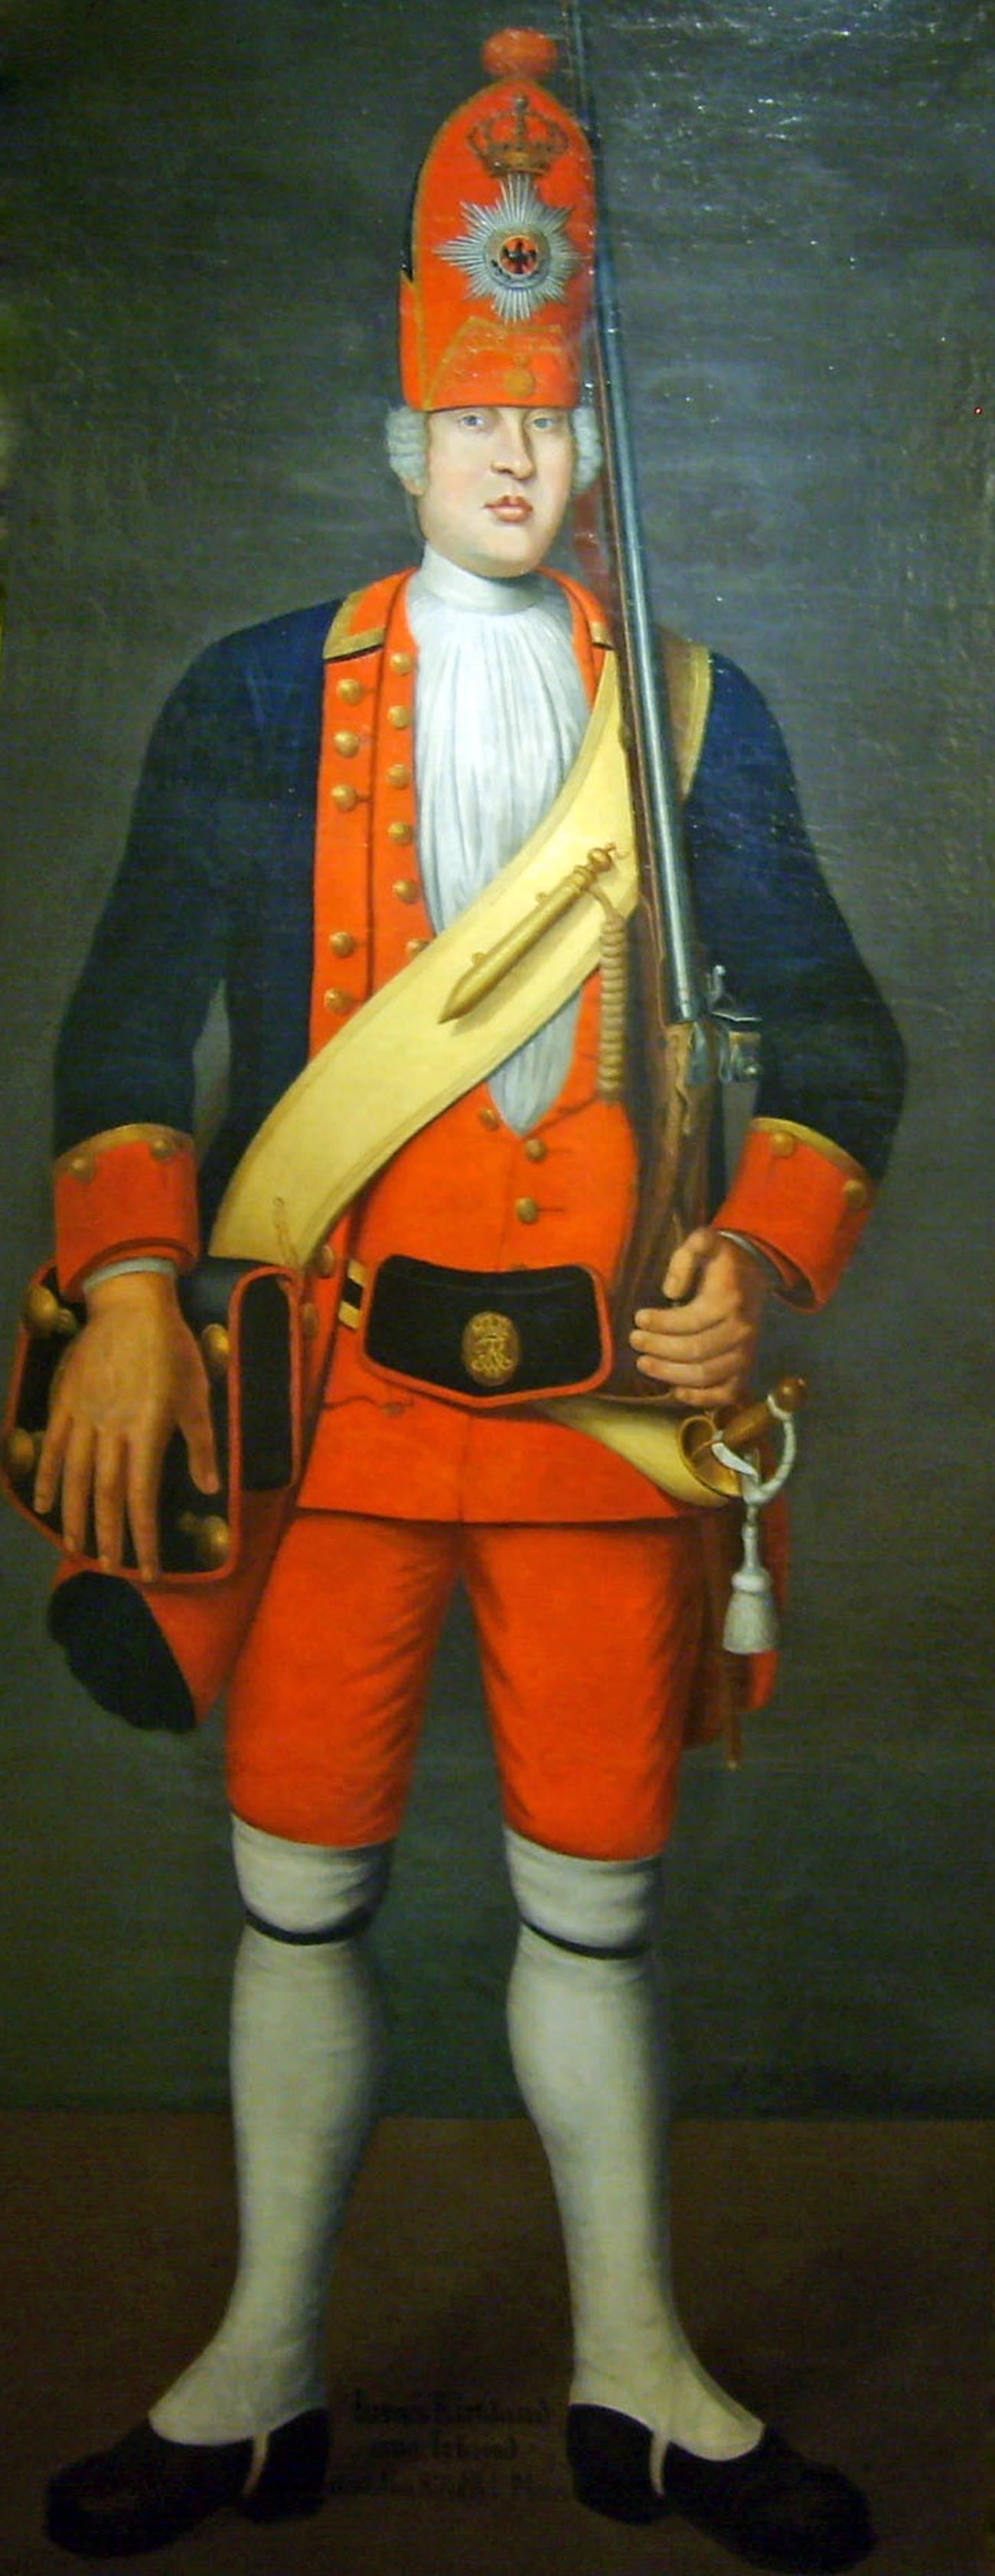 James Kirkland, uno dei giganti più alti: 216 cm. Fu catturato e costretto a unirsi agli “Spilungoni” del re di Prussia